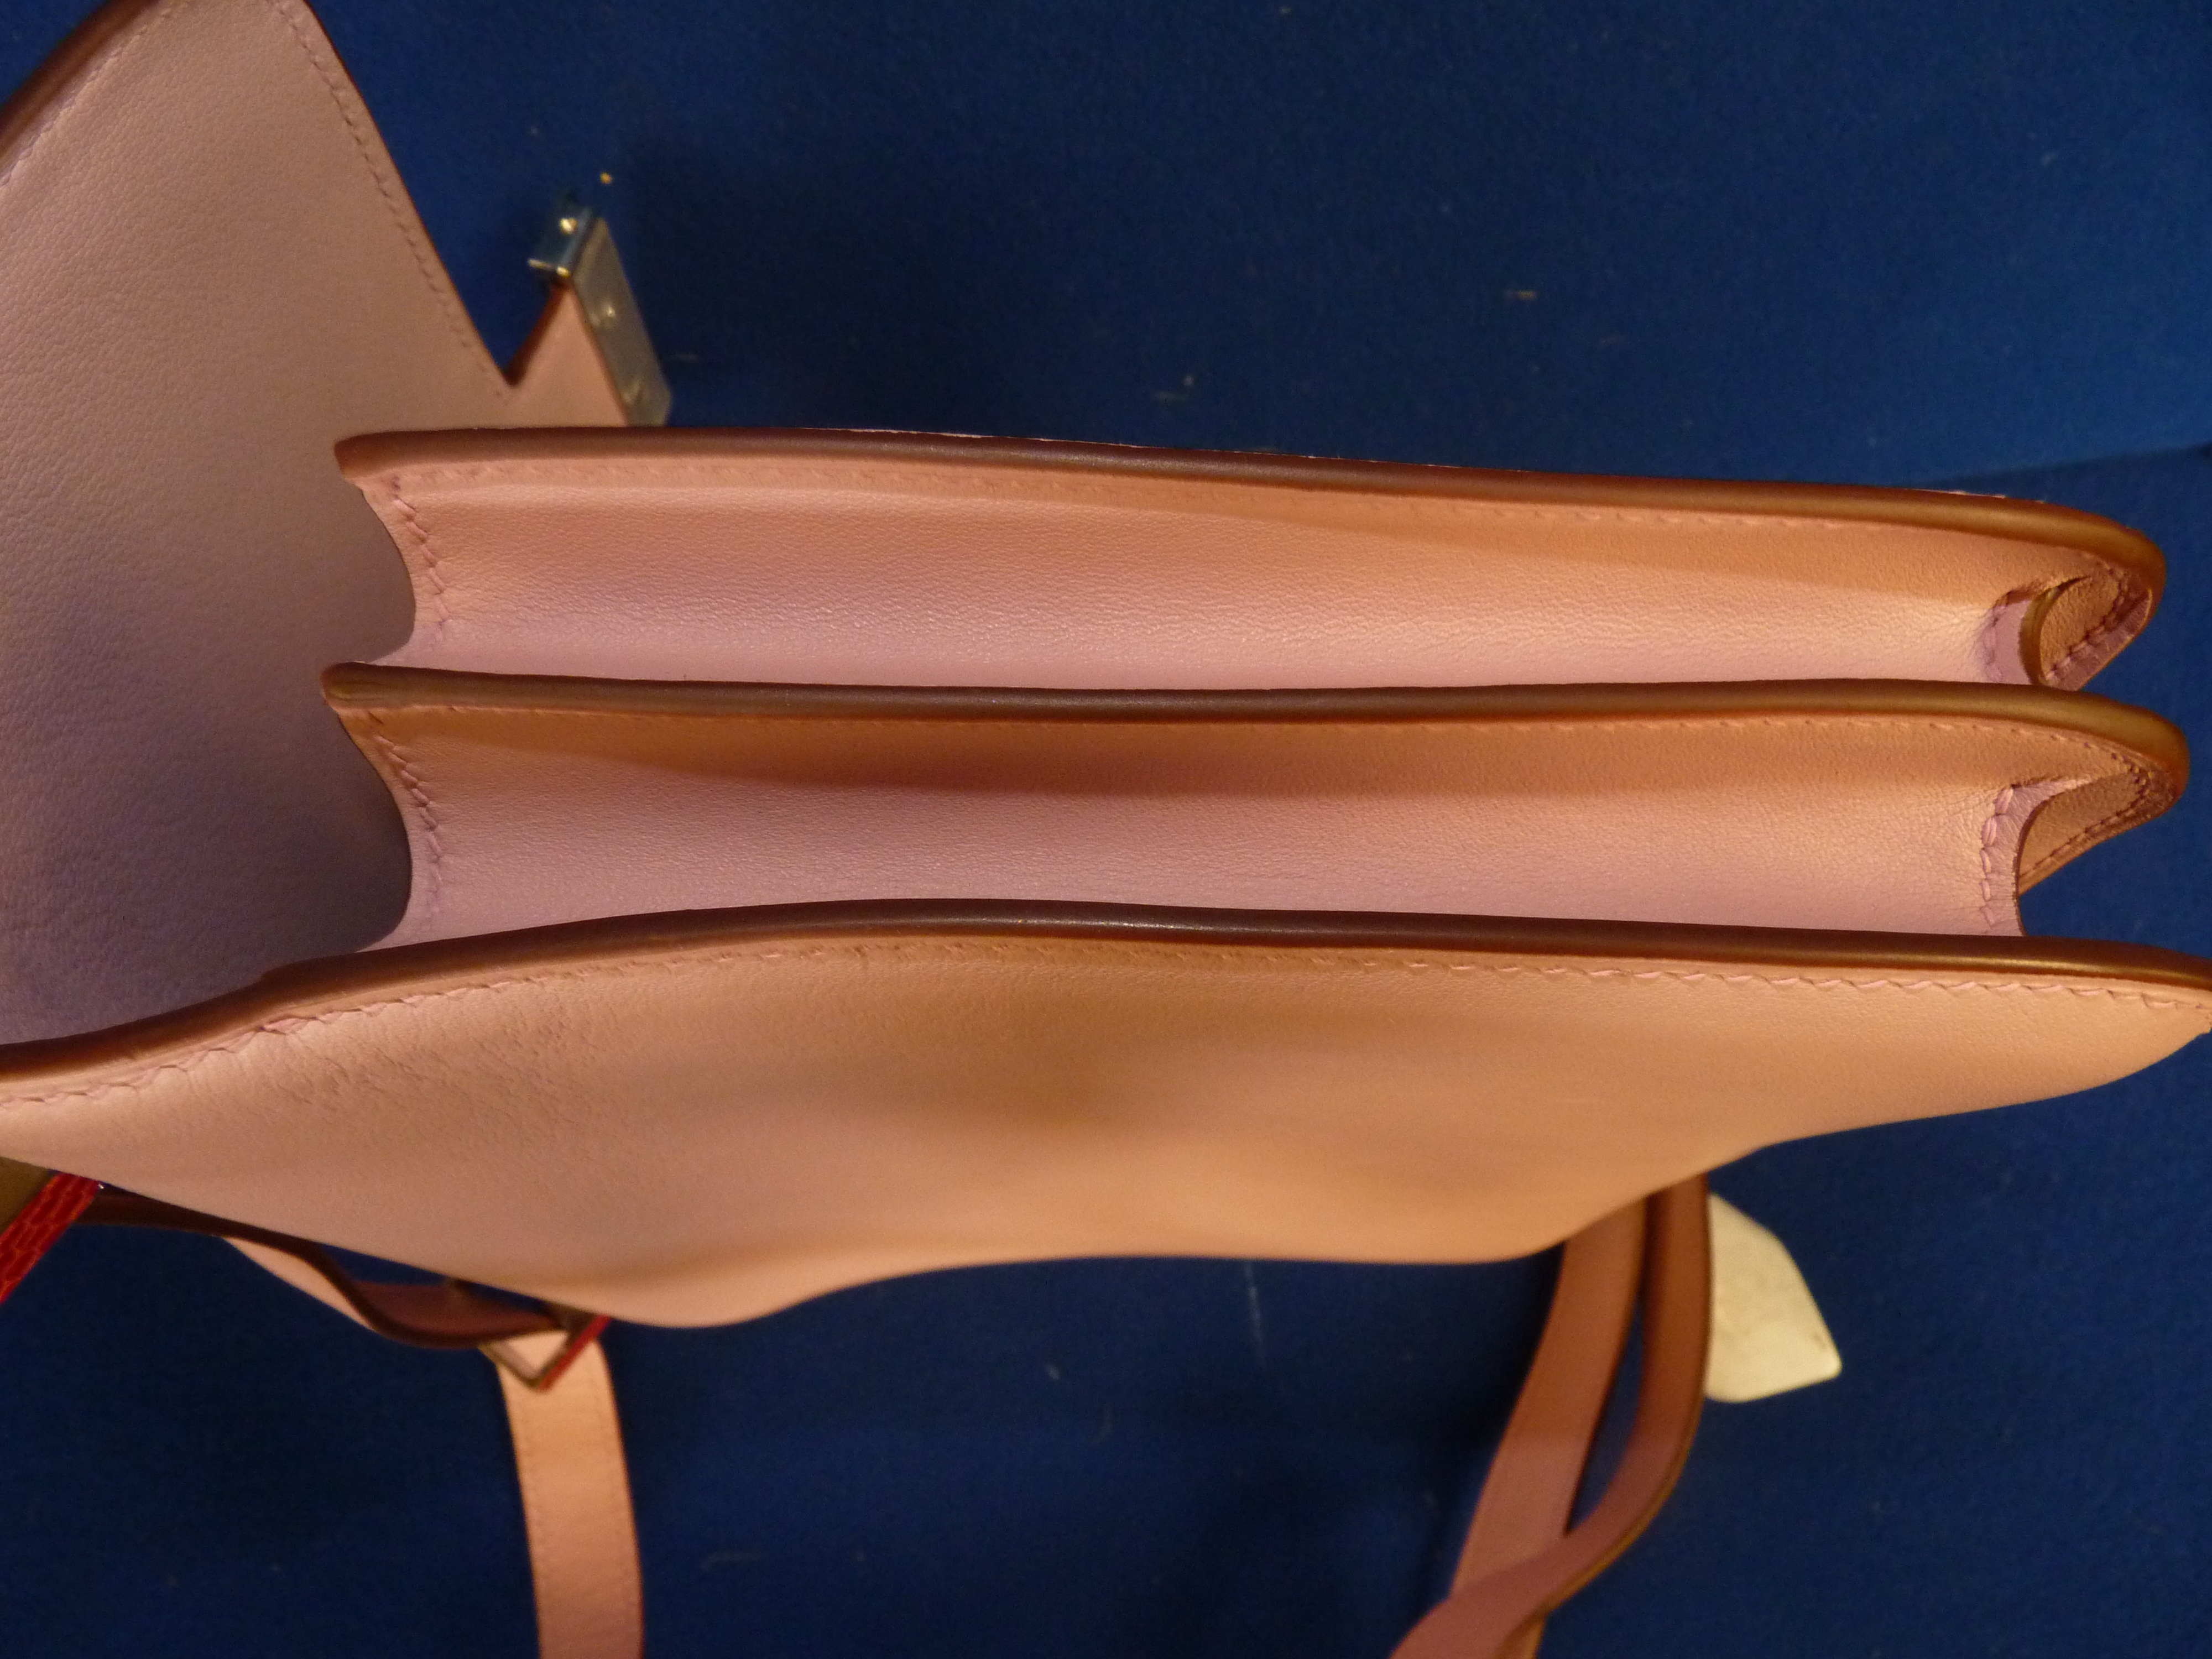 Boxed Hermes Pink Ladies Handbag - Image 7 of 14